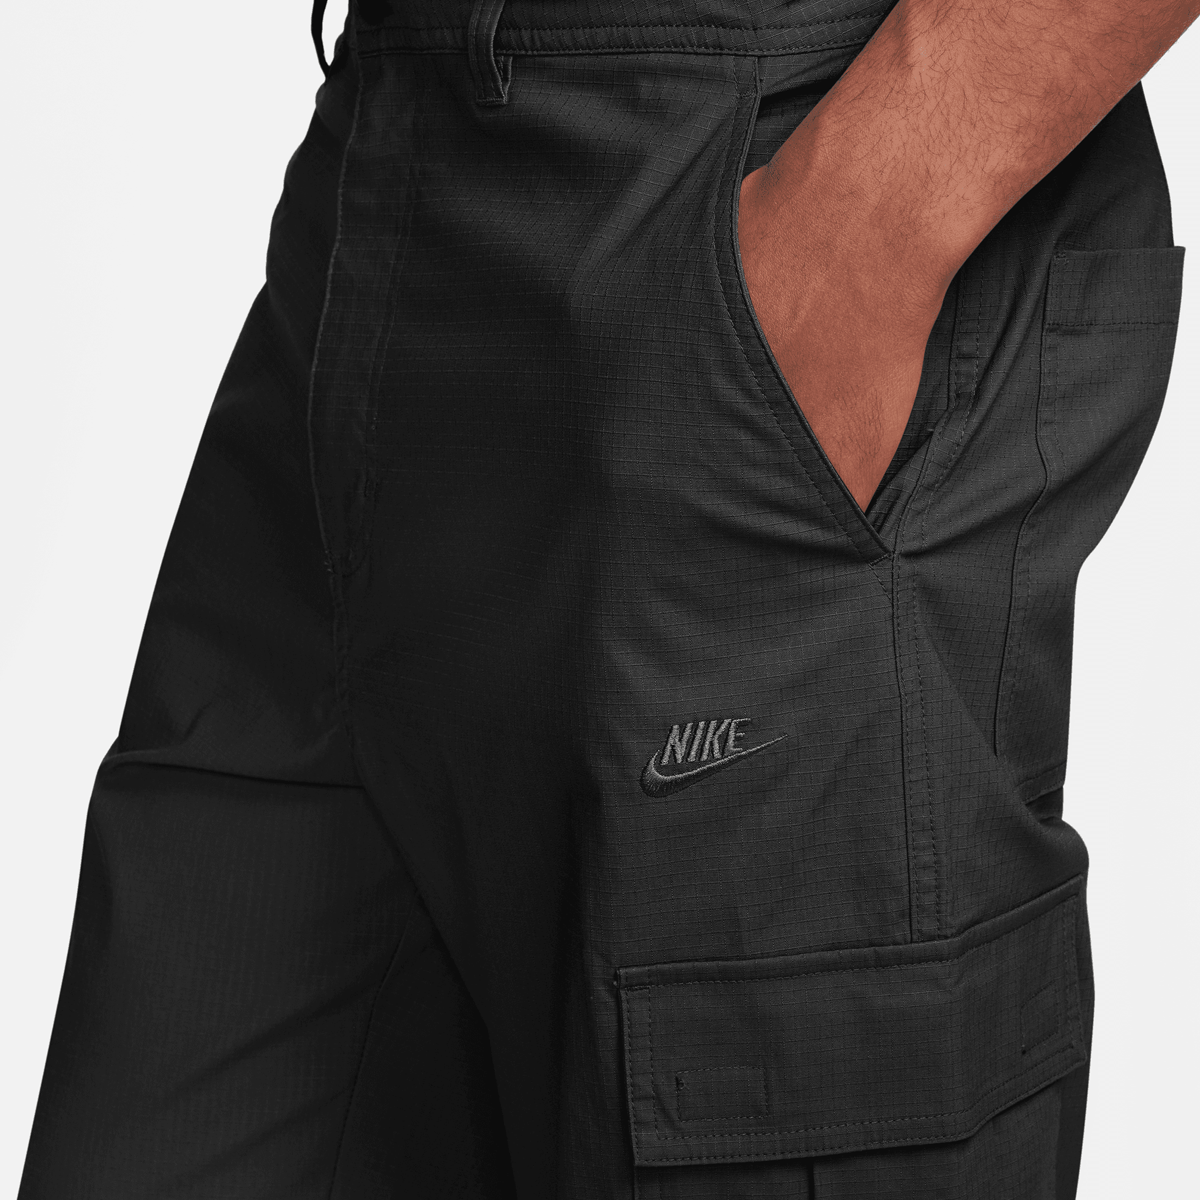 Nike Club Cargo Pants Cargobroeken Heren black black maat: 30 32 beschikbare maaten:30 32 32 36 32